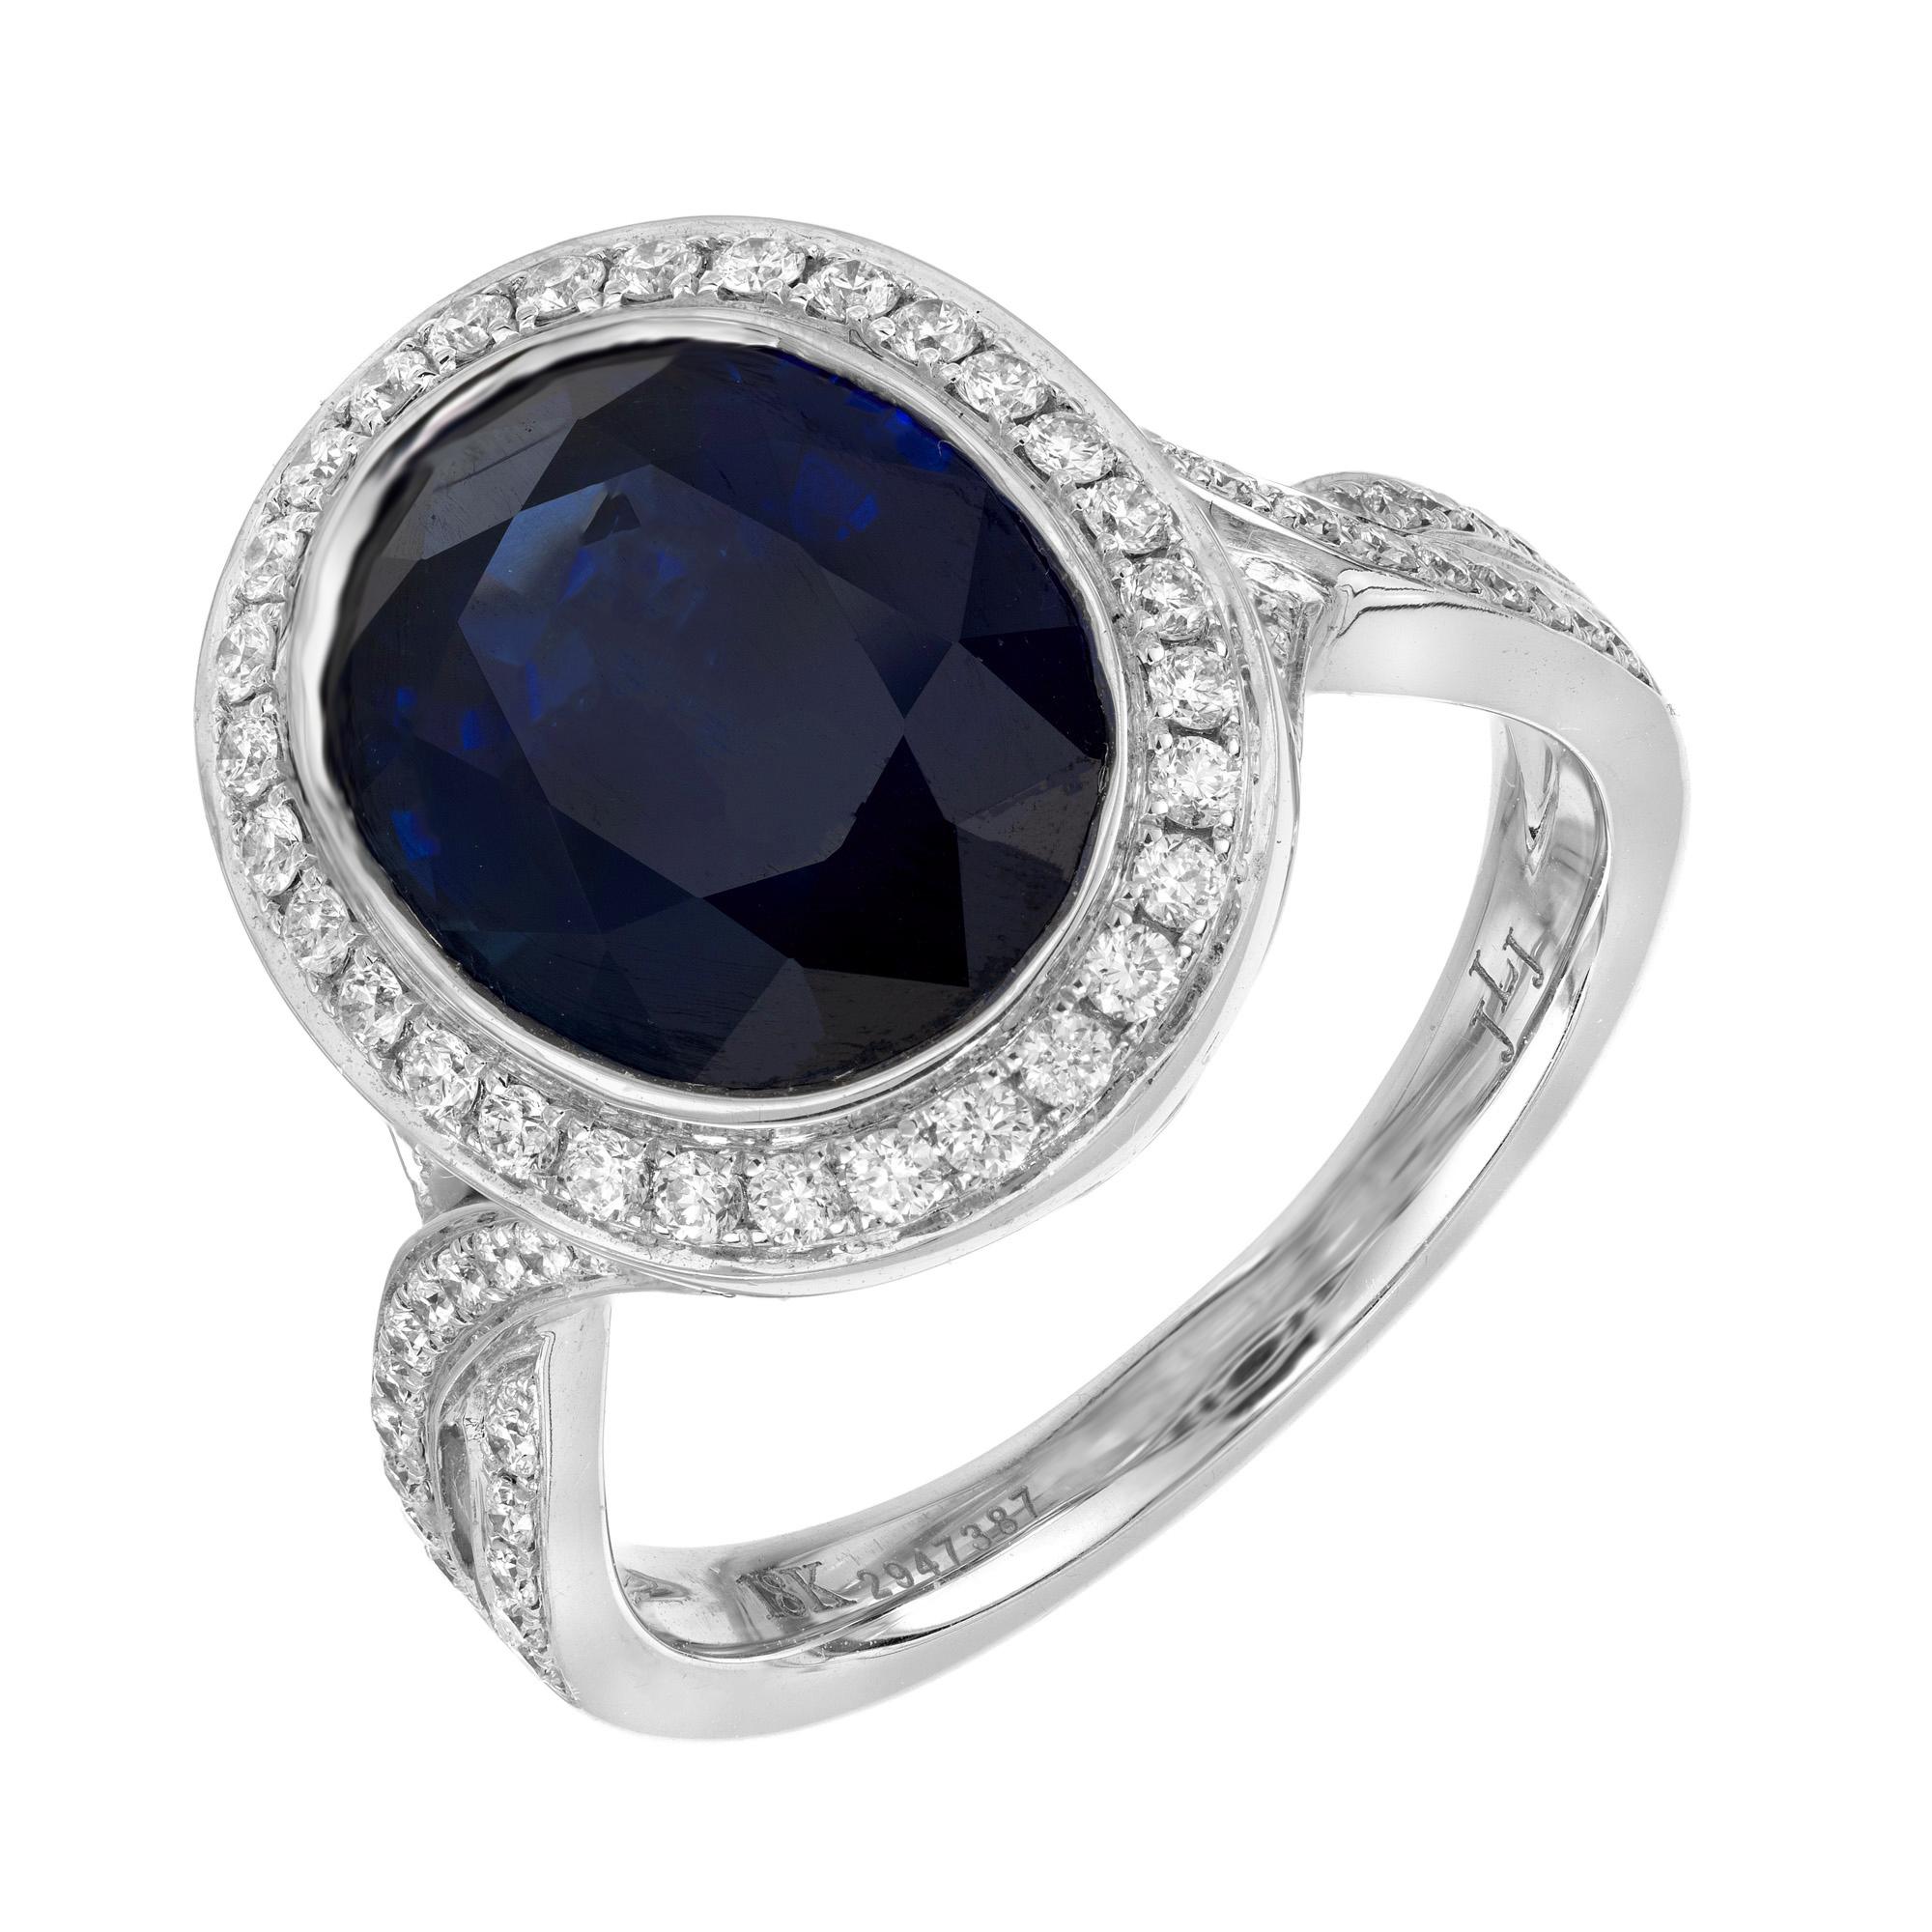 Impresionante anillo de compromiso de zafiro ovalado natural azul profundo y diamante. En el centro de este engaste hay un zafiro ovalado de color azul intenso montado y engastado en oro blanco de 18 quilates. El zafiro está acentuado por un halo de